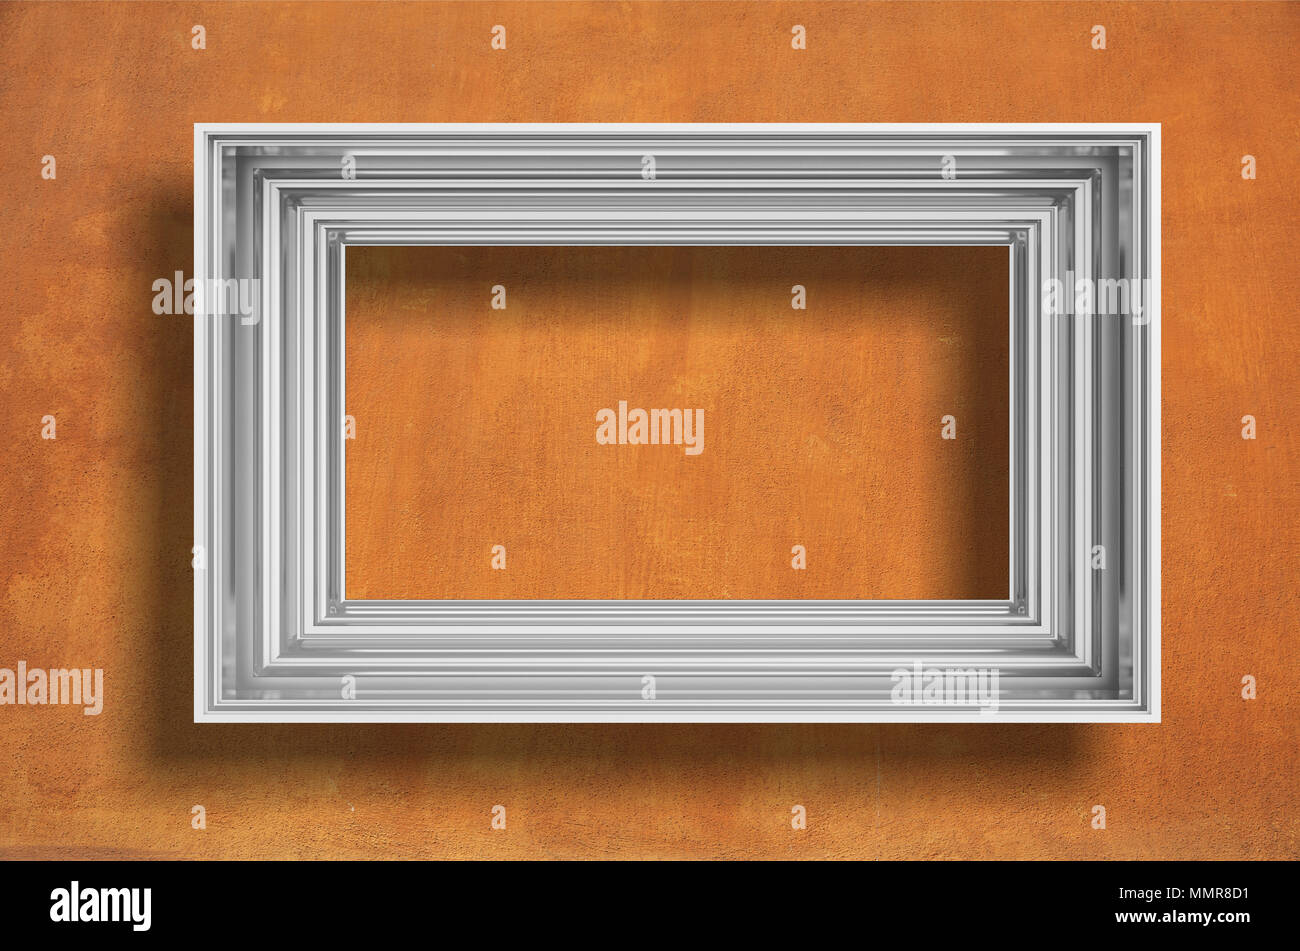 Rahmen silber auf orange texturierte Wand Hintergrund mit Kopie Platz für Text isoliert, 3 Abbildung d Stockfoto